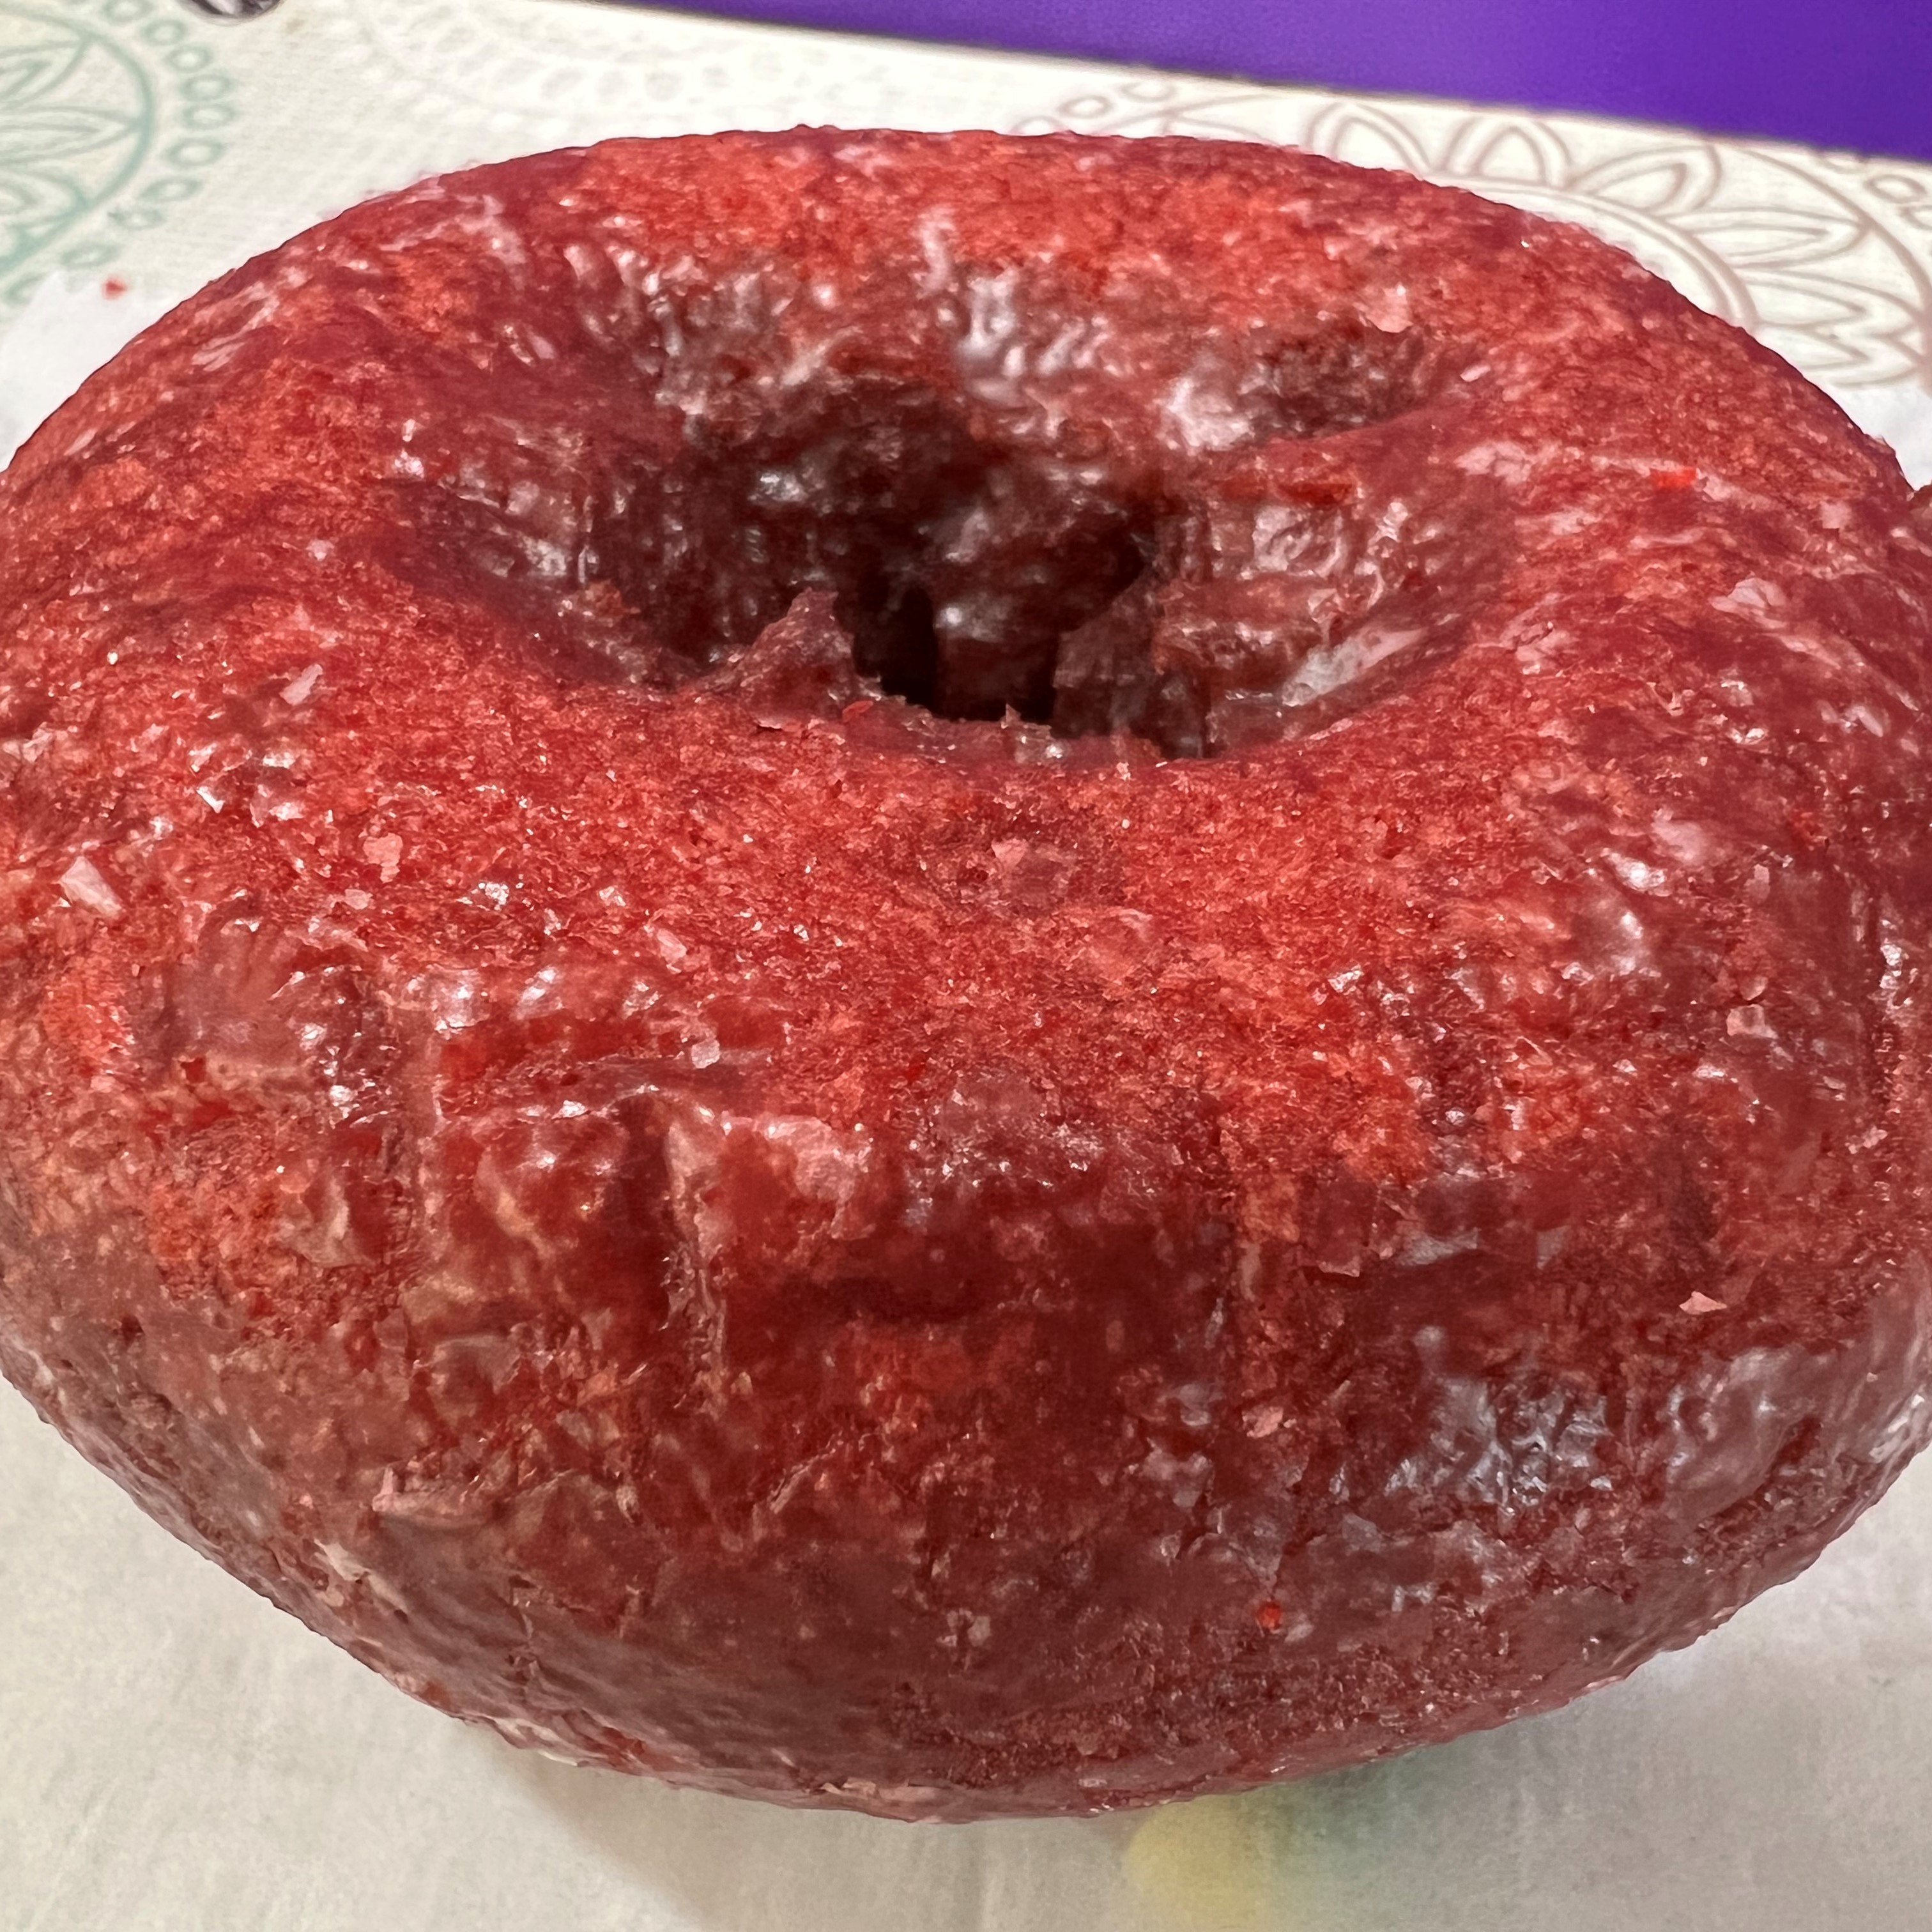 Red Velvet Cake Donut